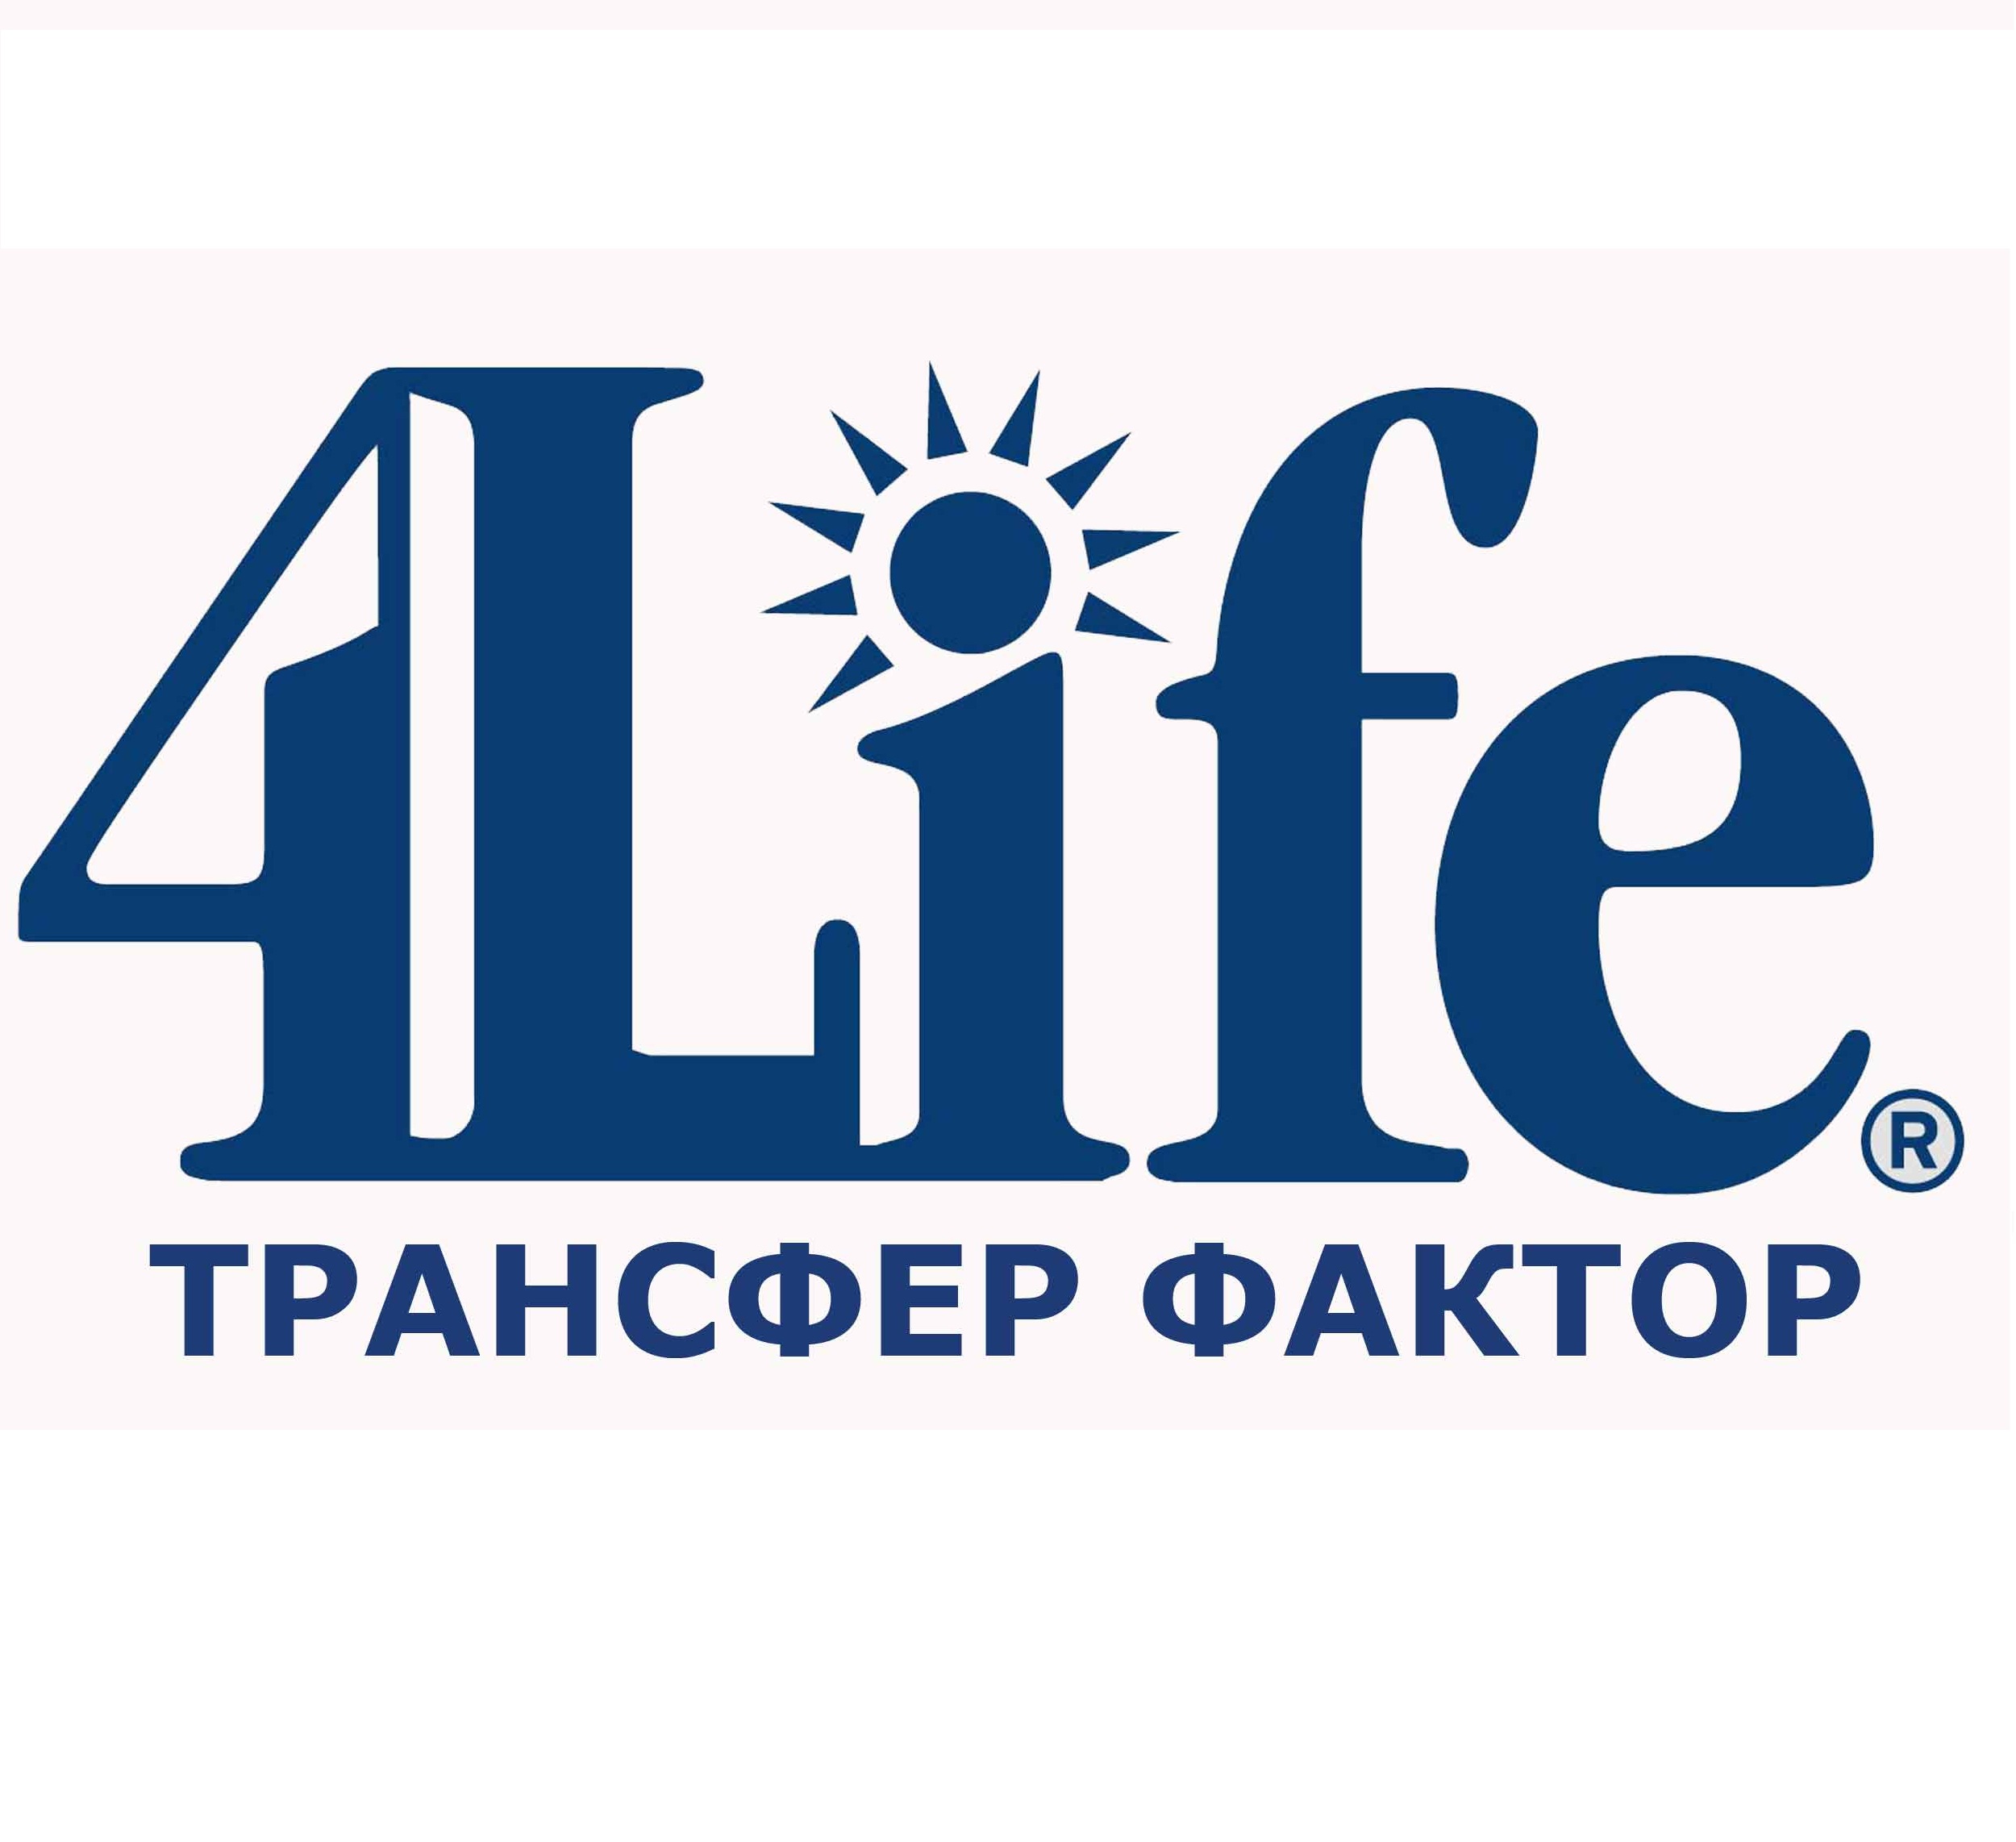 Build 4 life. Трансфер факторы 4life research. Трансфер фактор 4 Life logo. Компания 4life research. 4life новый логотип.